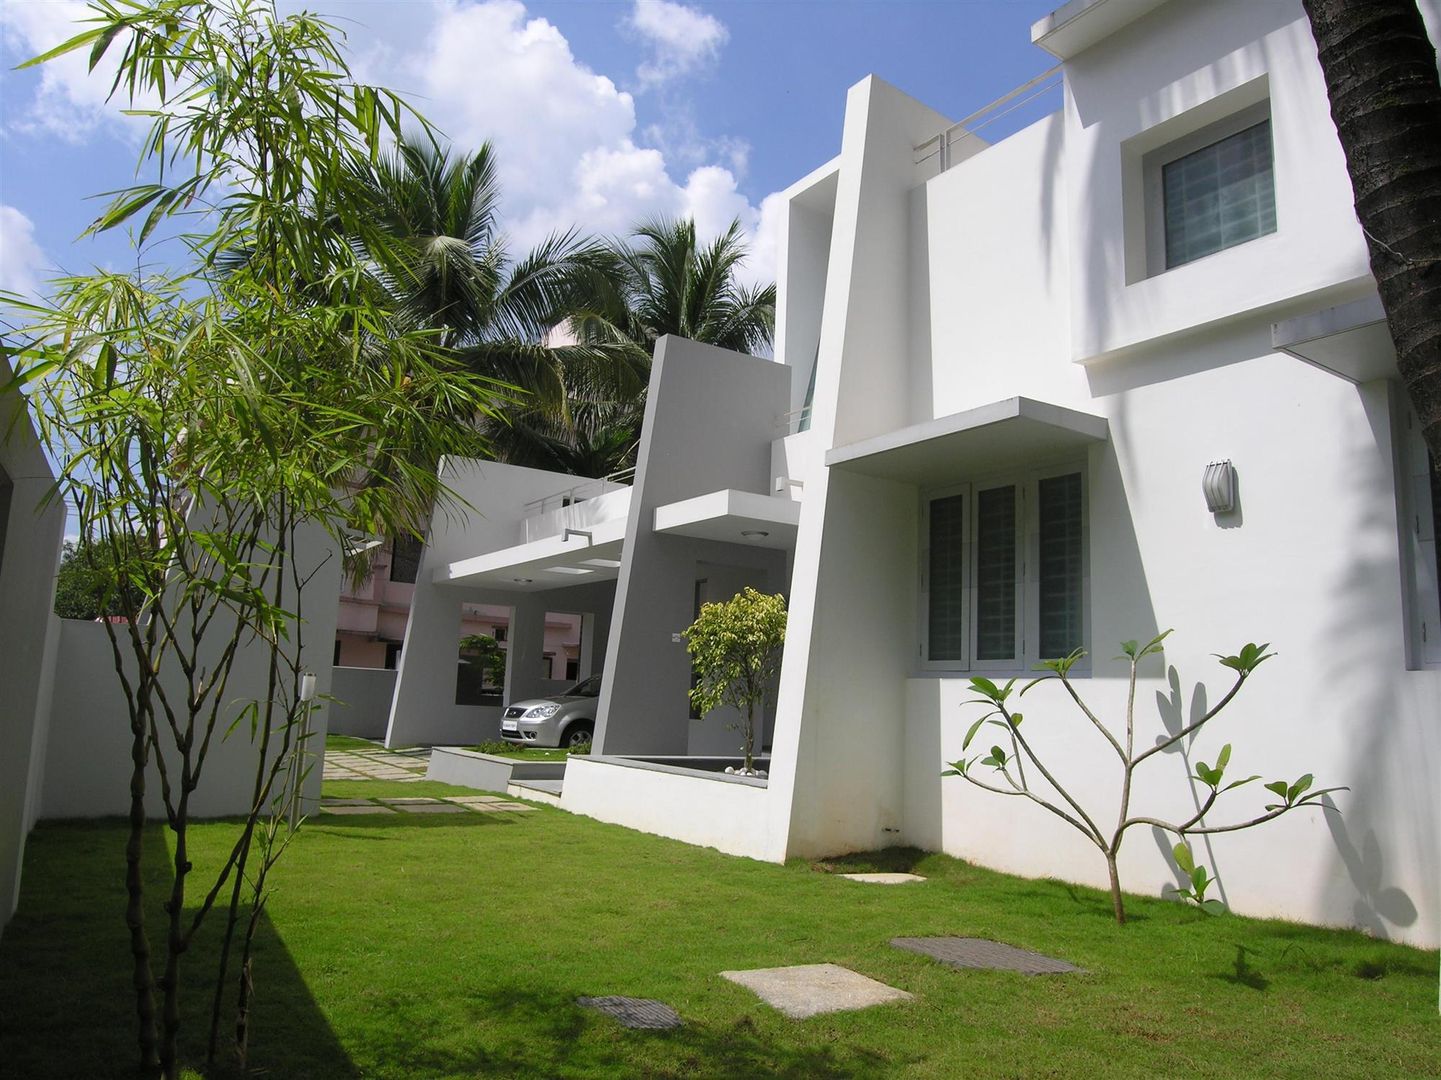 Residence at Punkunnam, Thrissur, Kerala., LIJO.RENY.architects LIJO.RENY.architects Houses